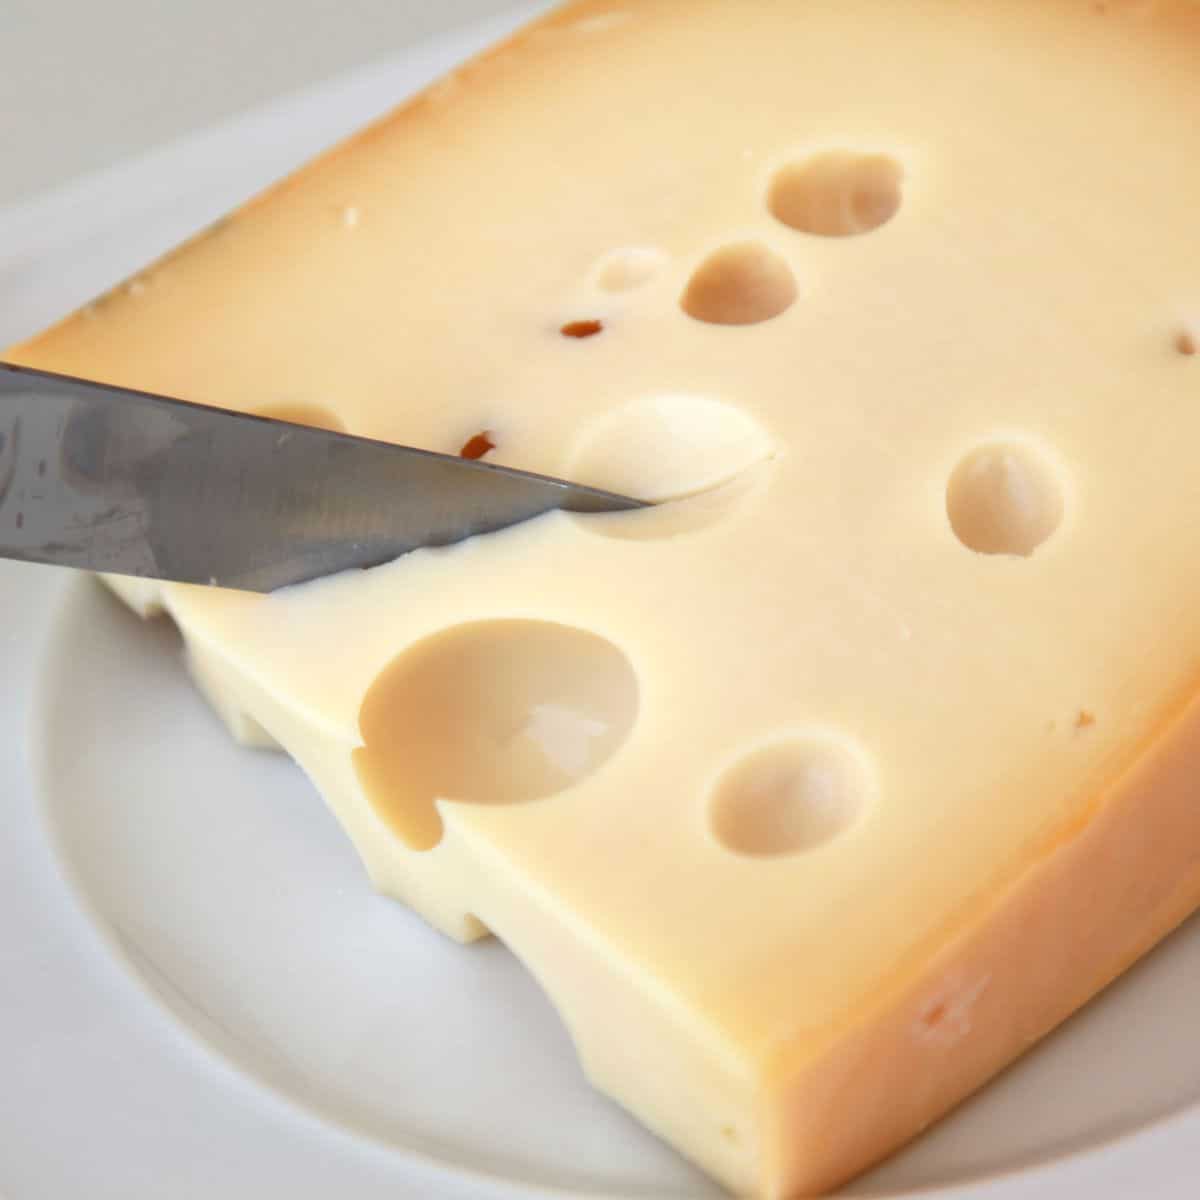 절단 중인 스위스 치즈의 사각형 이미지입니다.